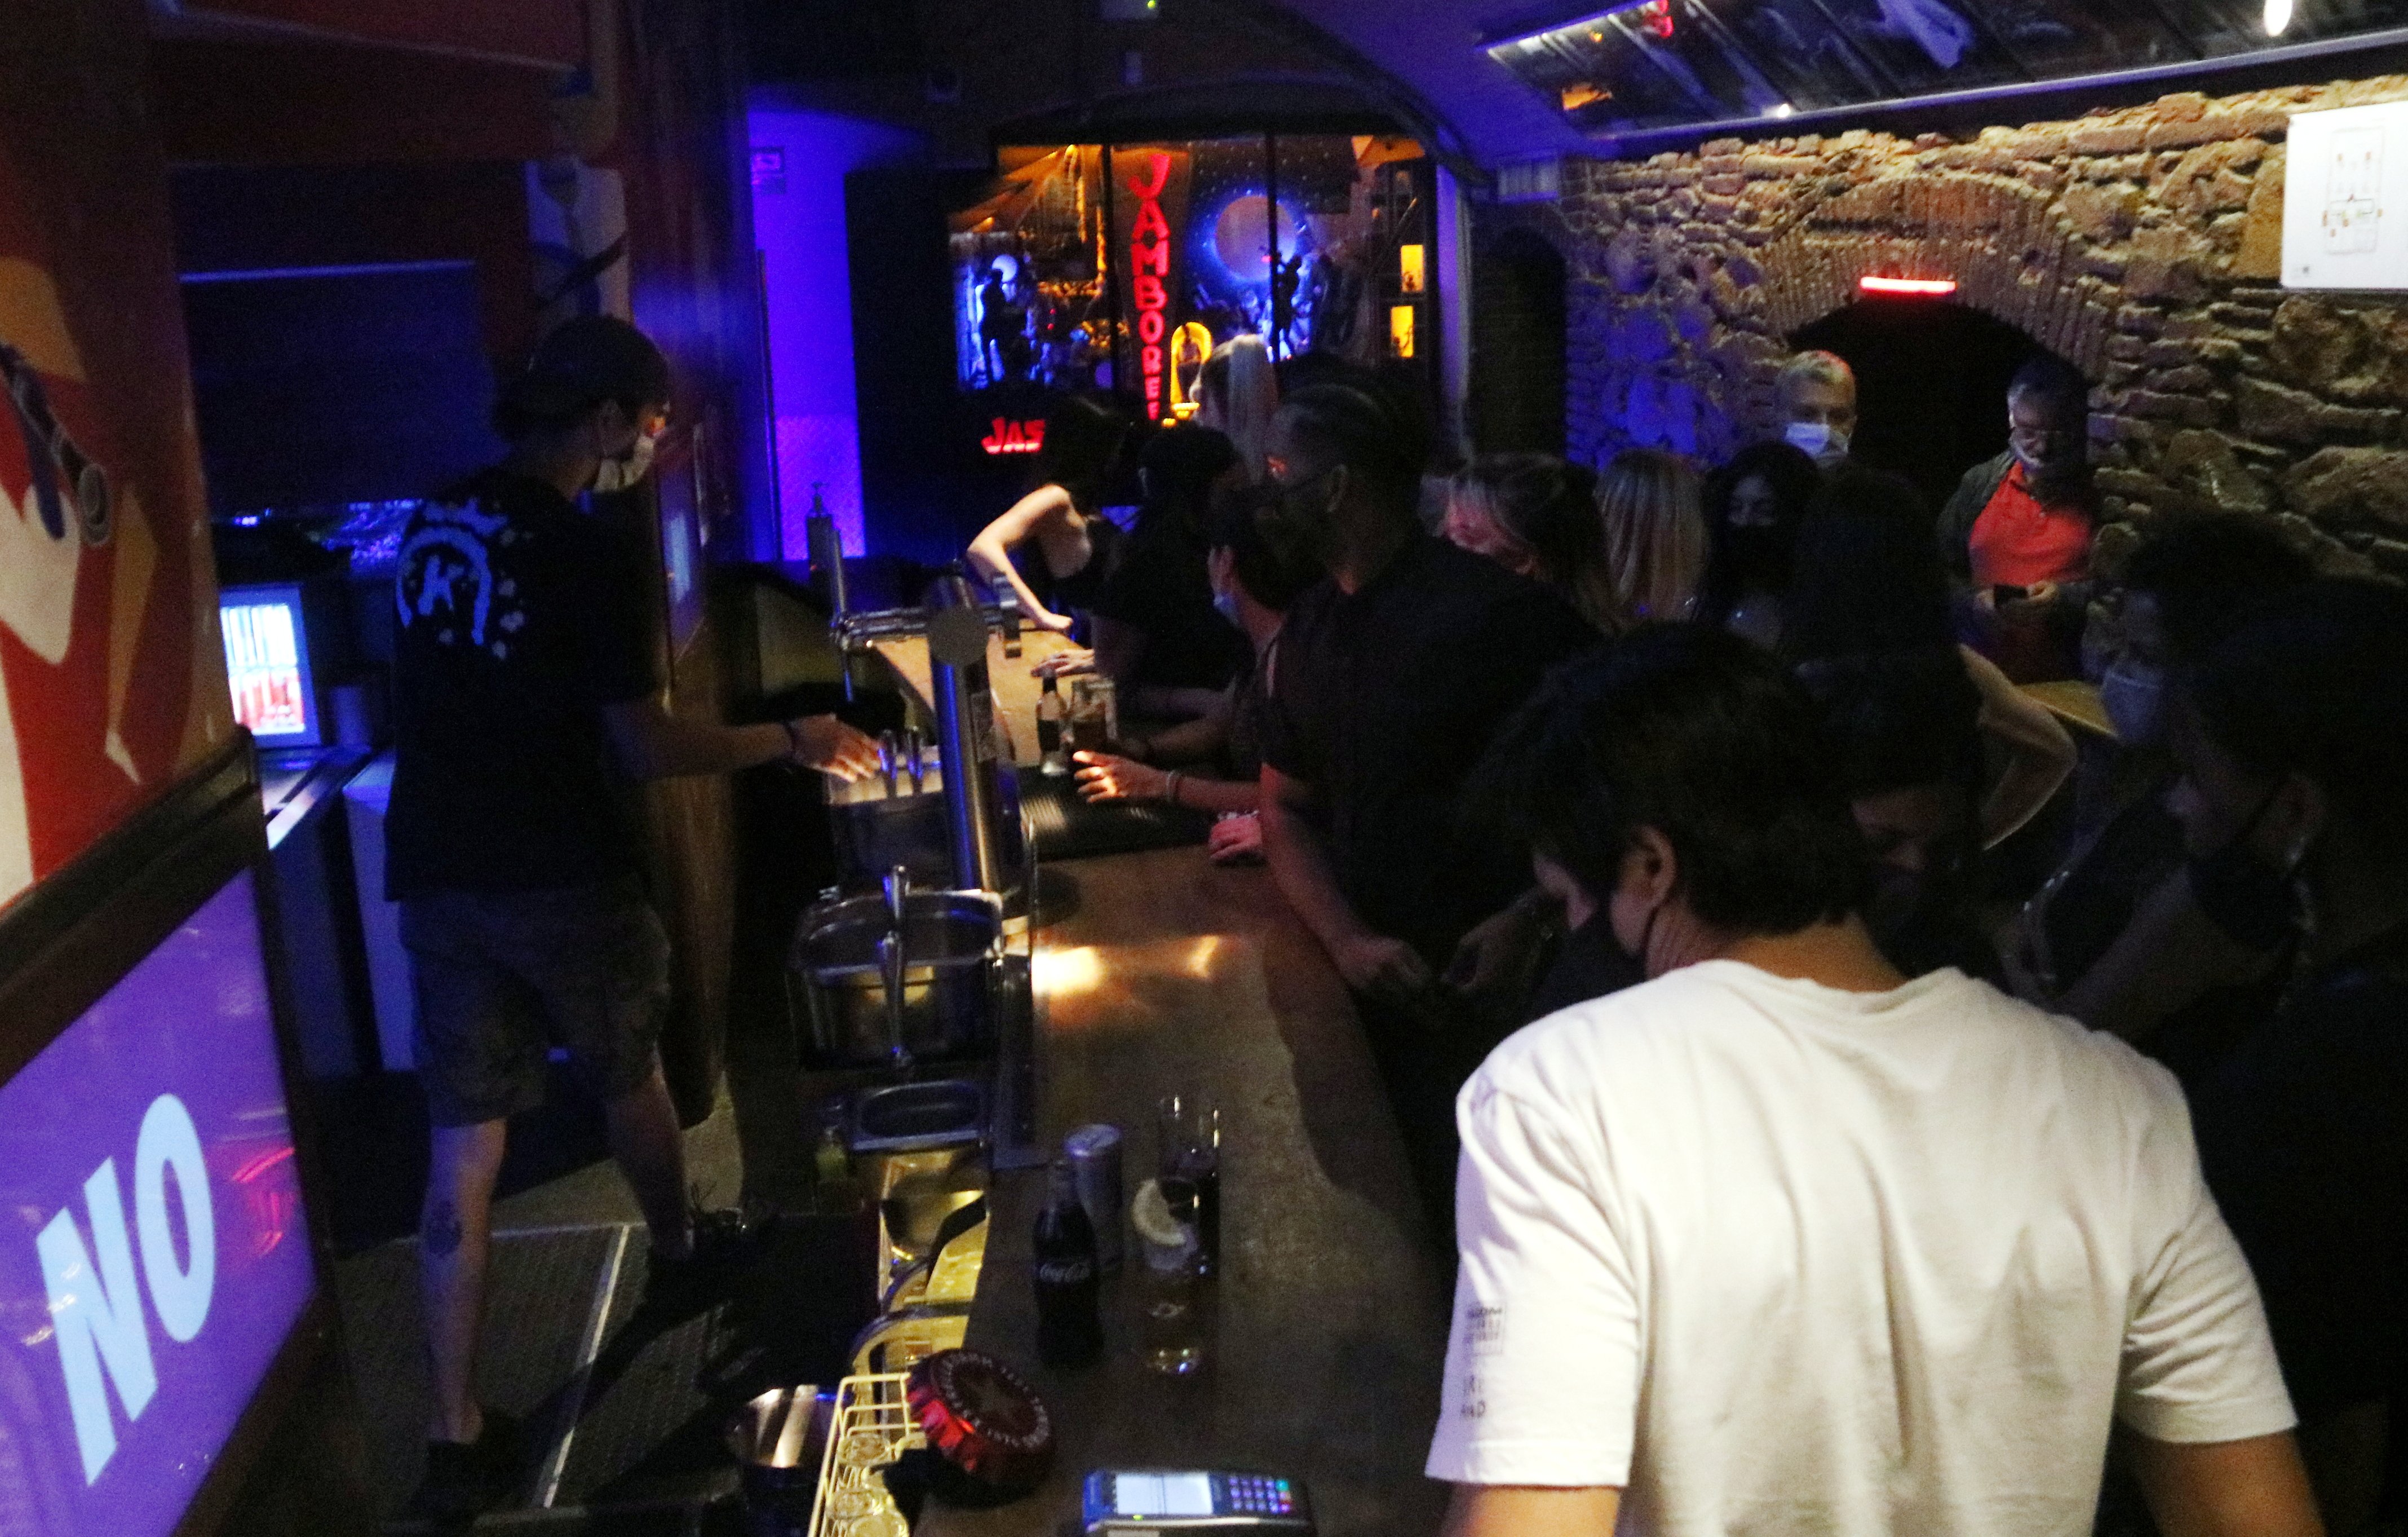 Els locals d'oci nocturn de Barcelona podran reobrir temporalment com a bars